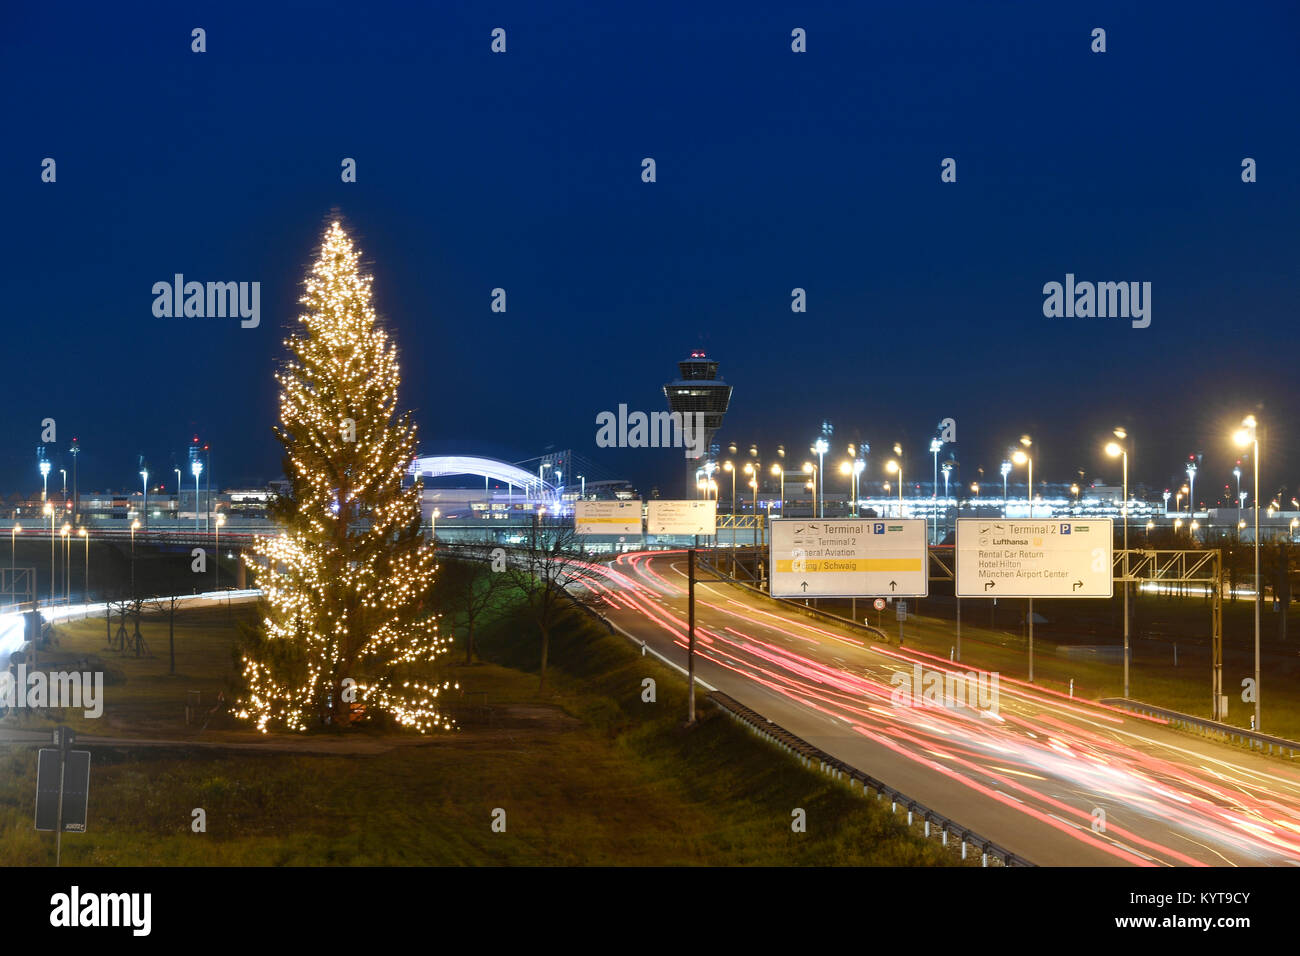 Arbre de Noël, et depuis l'aéroport, tour, terminal 1, mac, Munich Airport Center, rue, route, voitures, lumières, crépuscule, hiver, l'aéroport de Munich, MUC, Banque D'Images